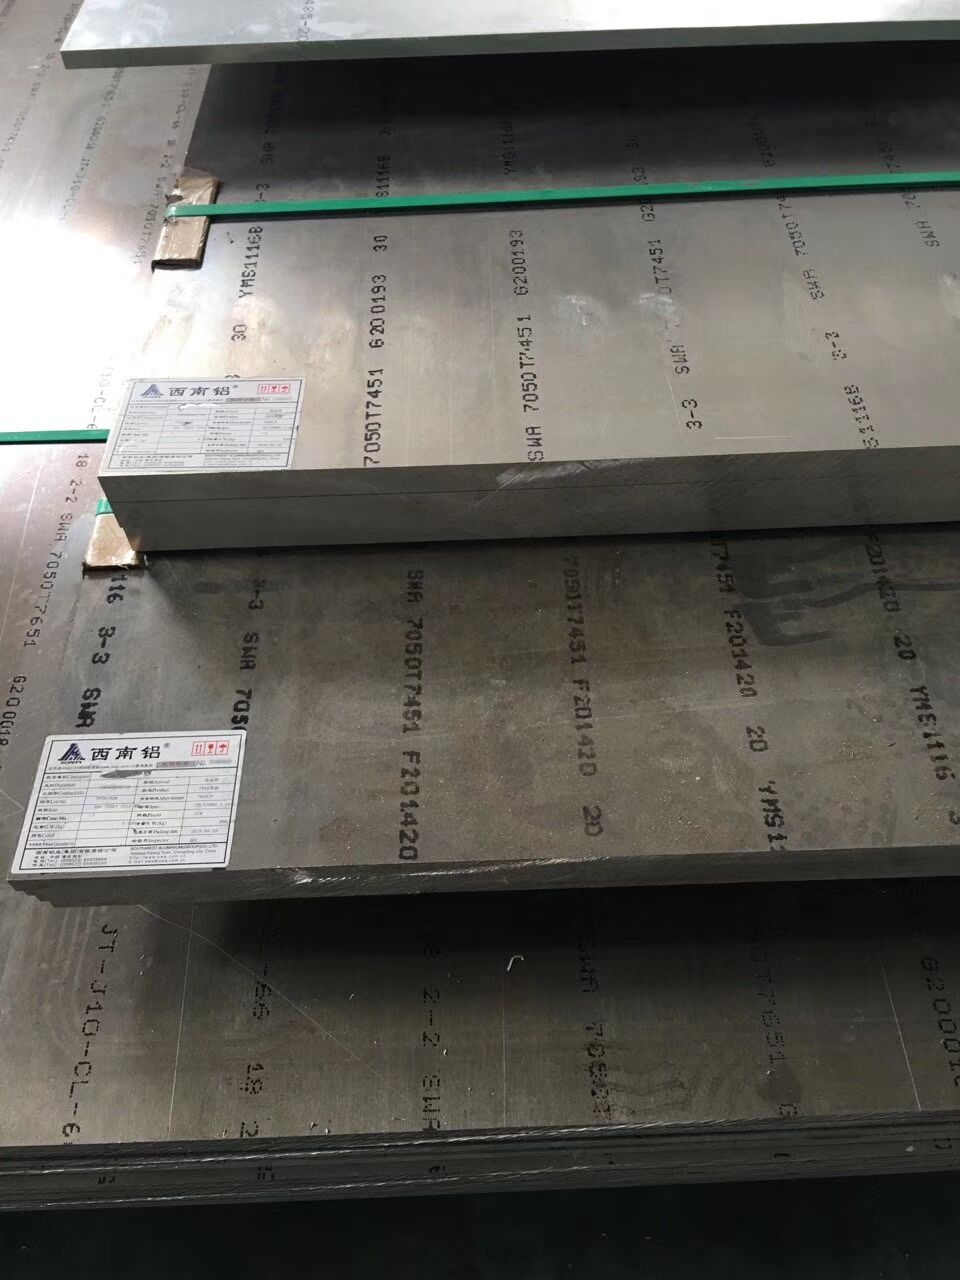 煙 臺5083鋁板是什麼材料 